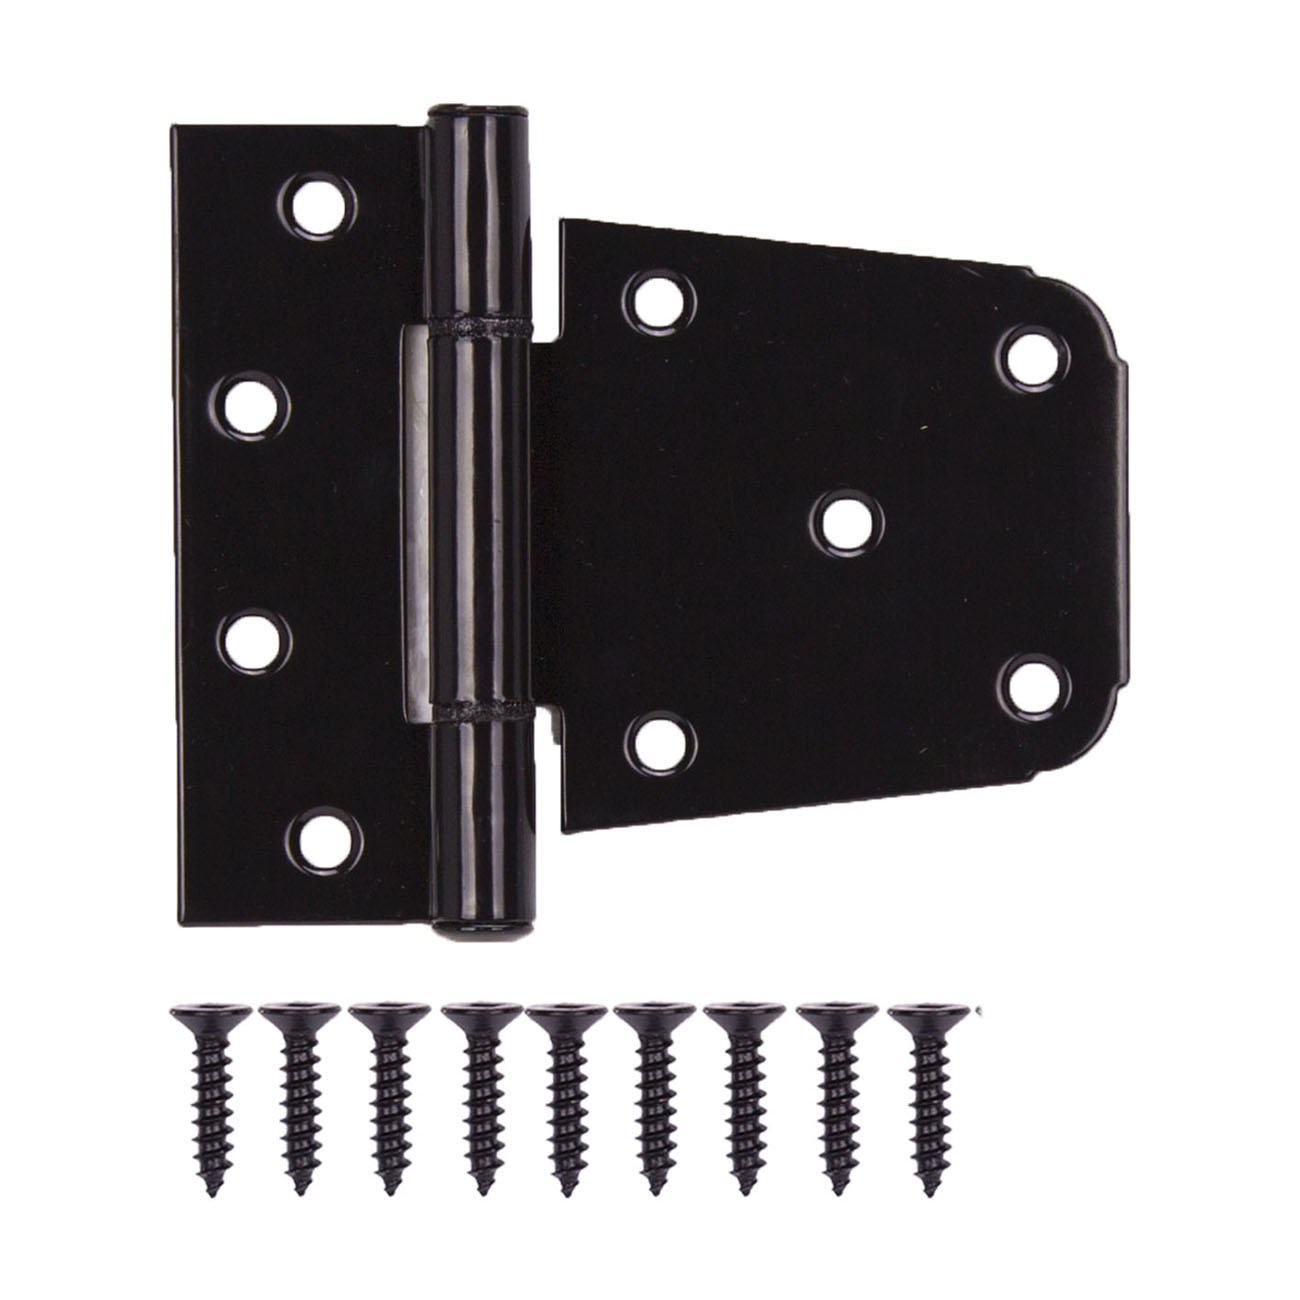 LR-183-PS Gate Hinge, Steel, Black, Fixed Pin, 180 deg Range of Motion, 46 (Pair) lb